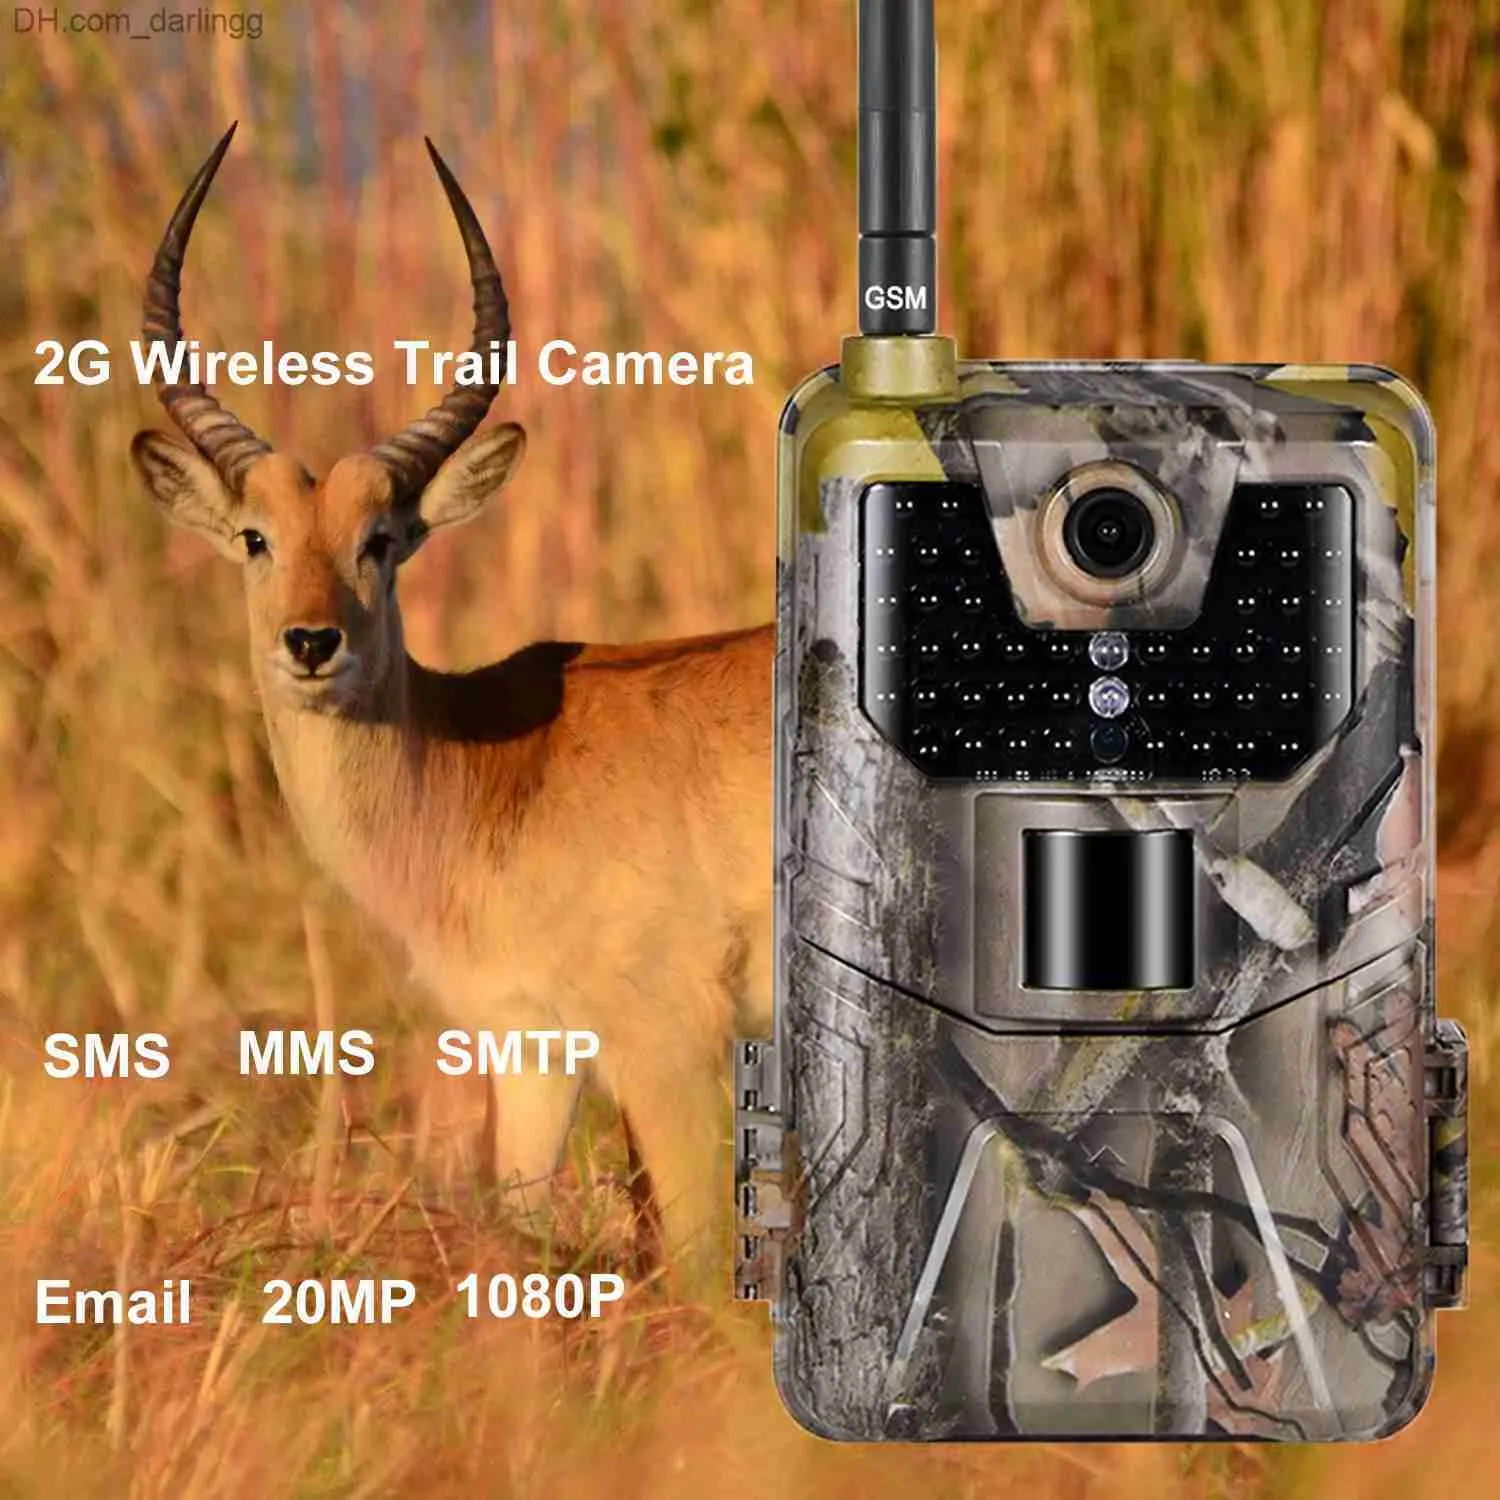 ハンティングカメラハンティングカメラワイルドライフトレイルカメラ写真トラップナイトビジョン2G SMS MMS PメールセルラーハンティングカメラHC900M 20MP 1080p監視Q240306